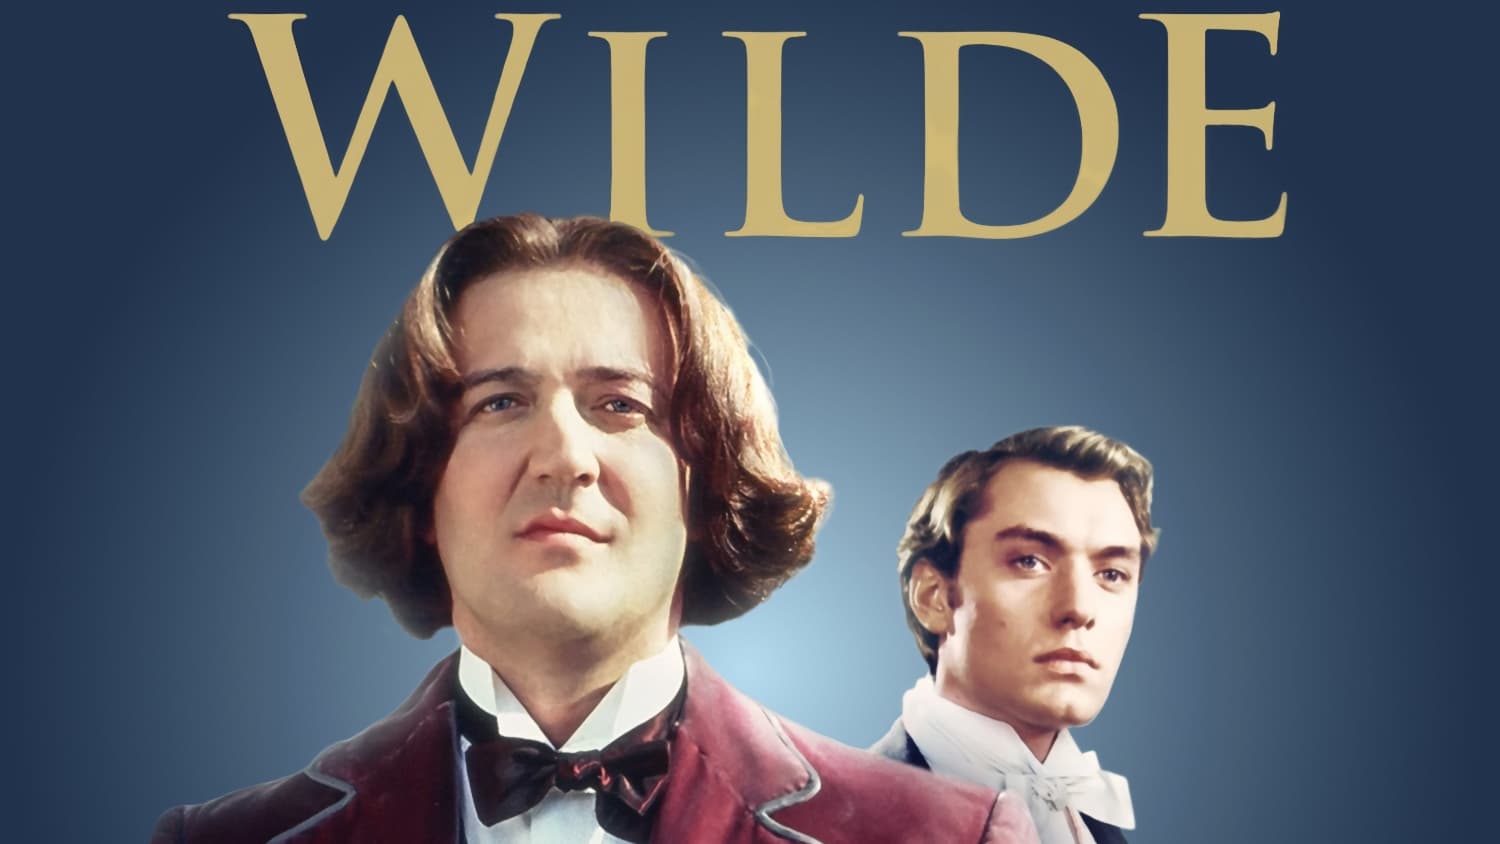 Oscar Wilde (1997)